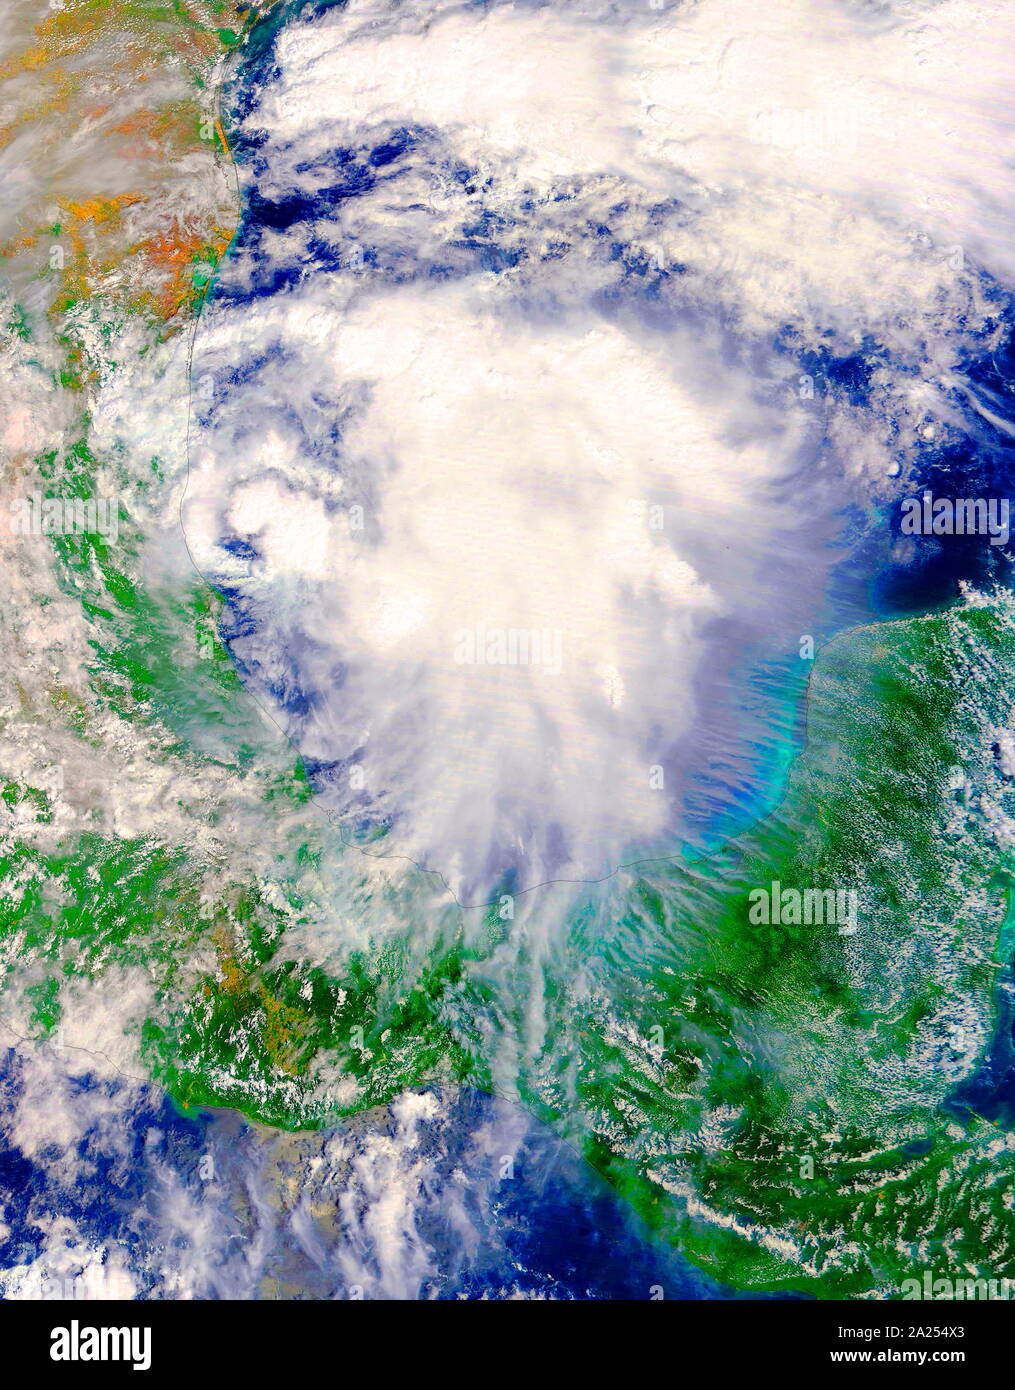 Die NASA-Satelliten Terra ging über die Entwicklung von Tropischen Sturm Katia im westlichen Golf von Mexiko am 5. September 2017 um 1:10 Uhr EDT (1710 UTC). Stockfoto